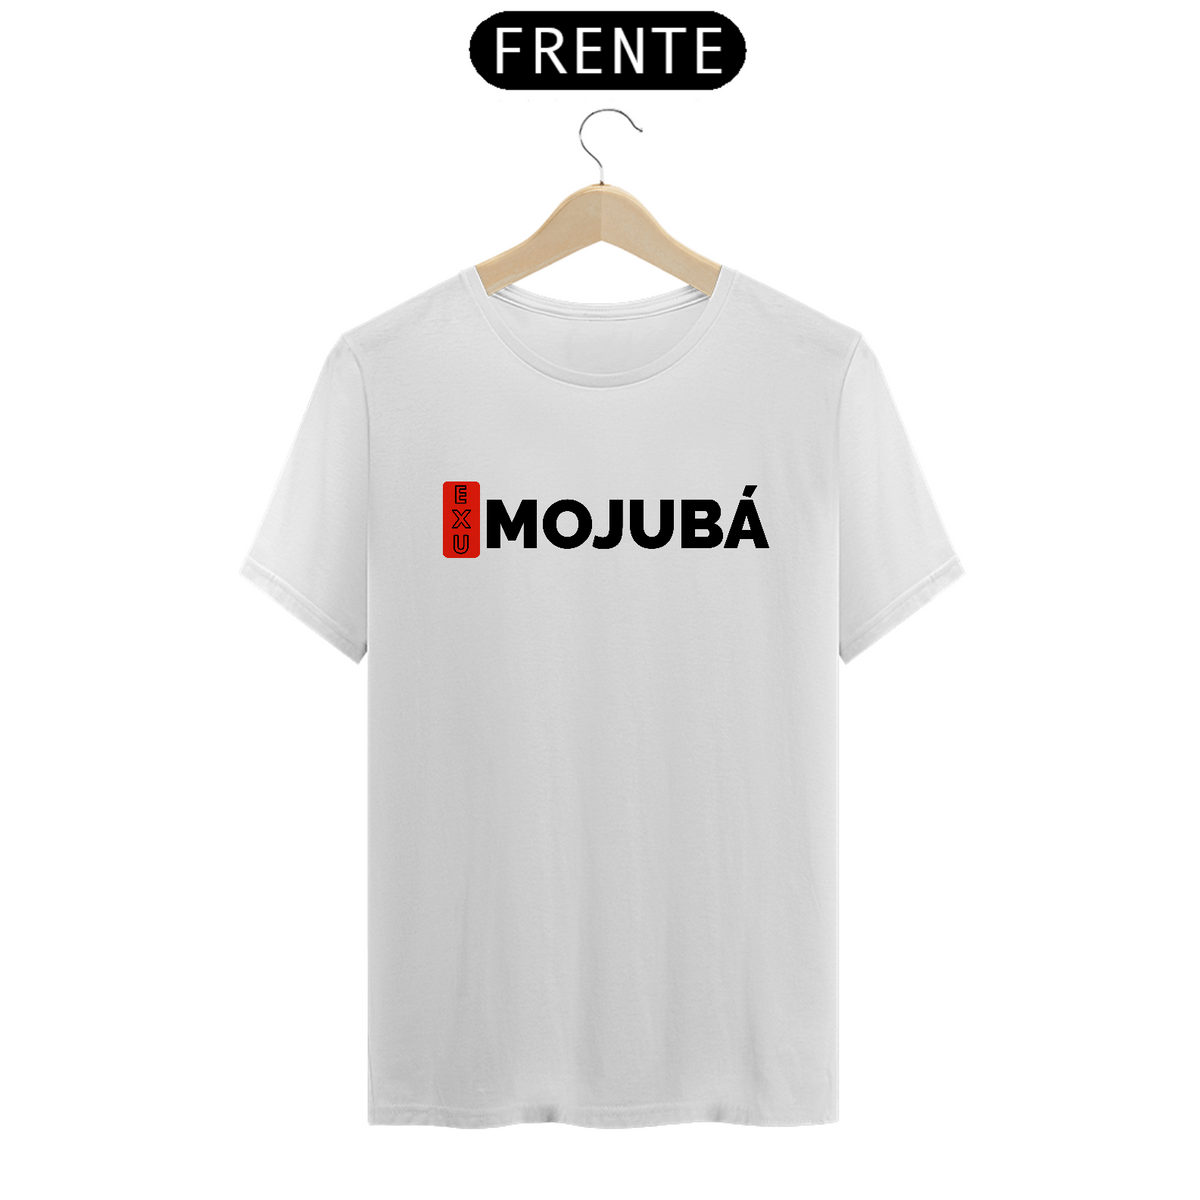 Nome do produto: Camiseta Mojubá